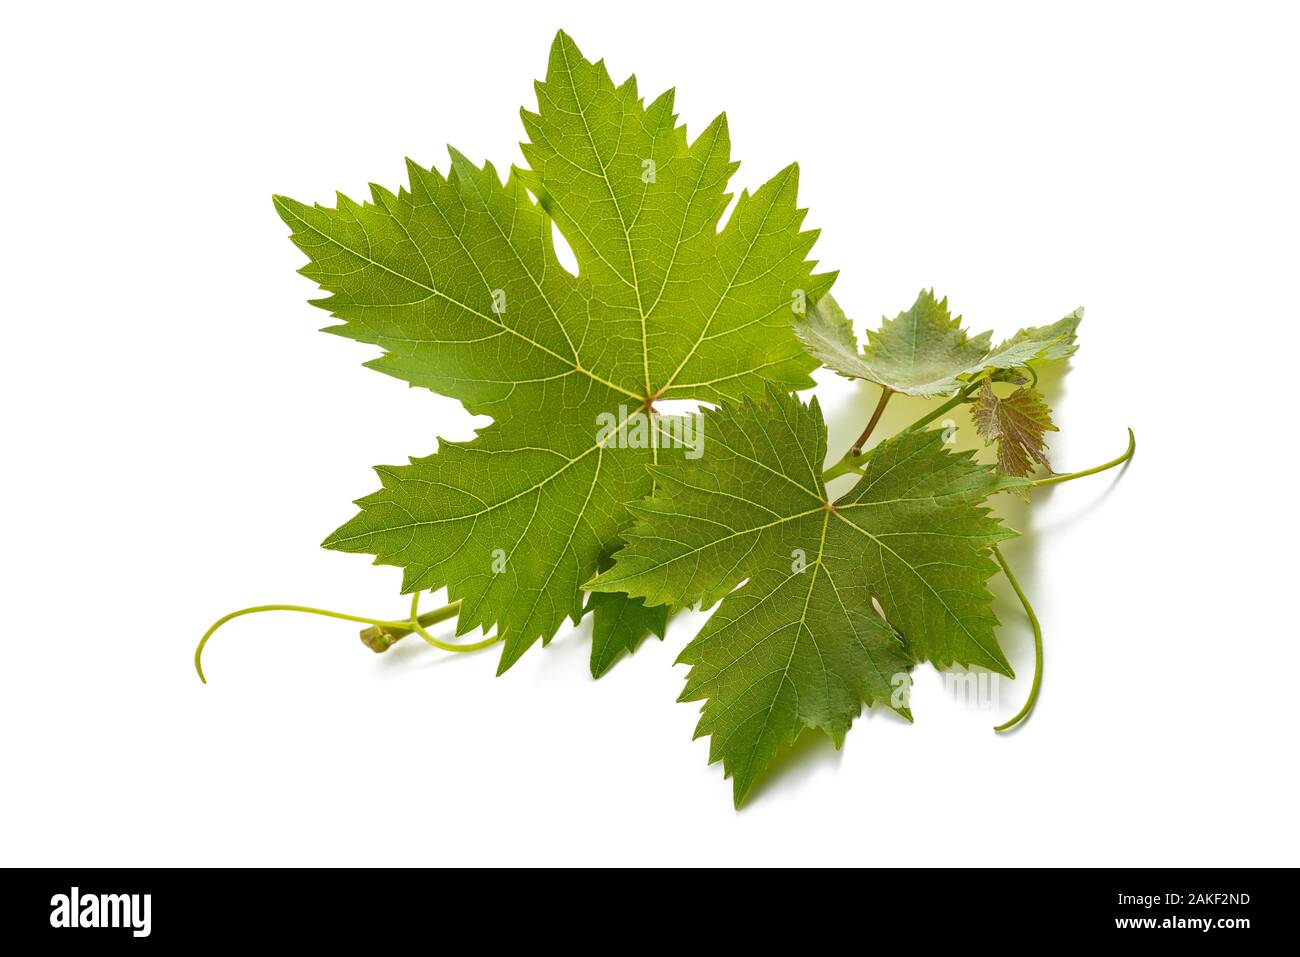 Vine shoot isolated on white background Stock Photo